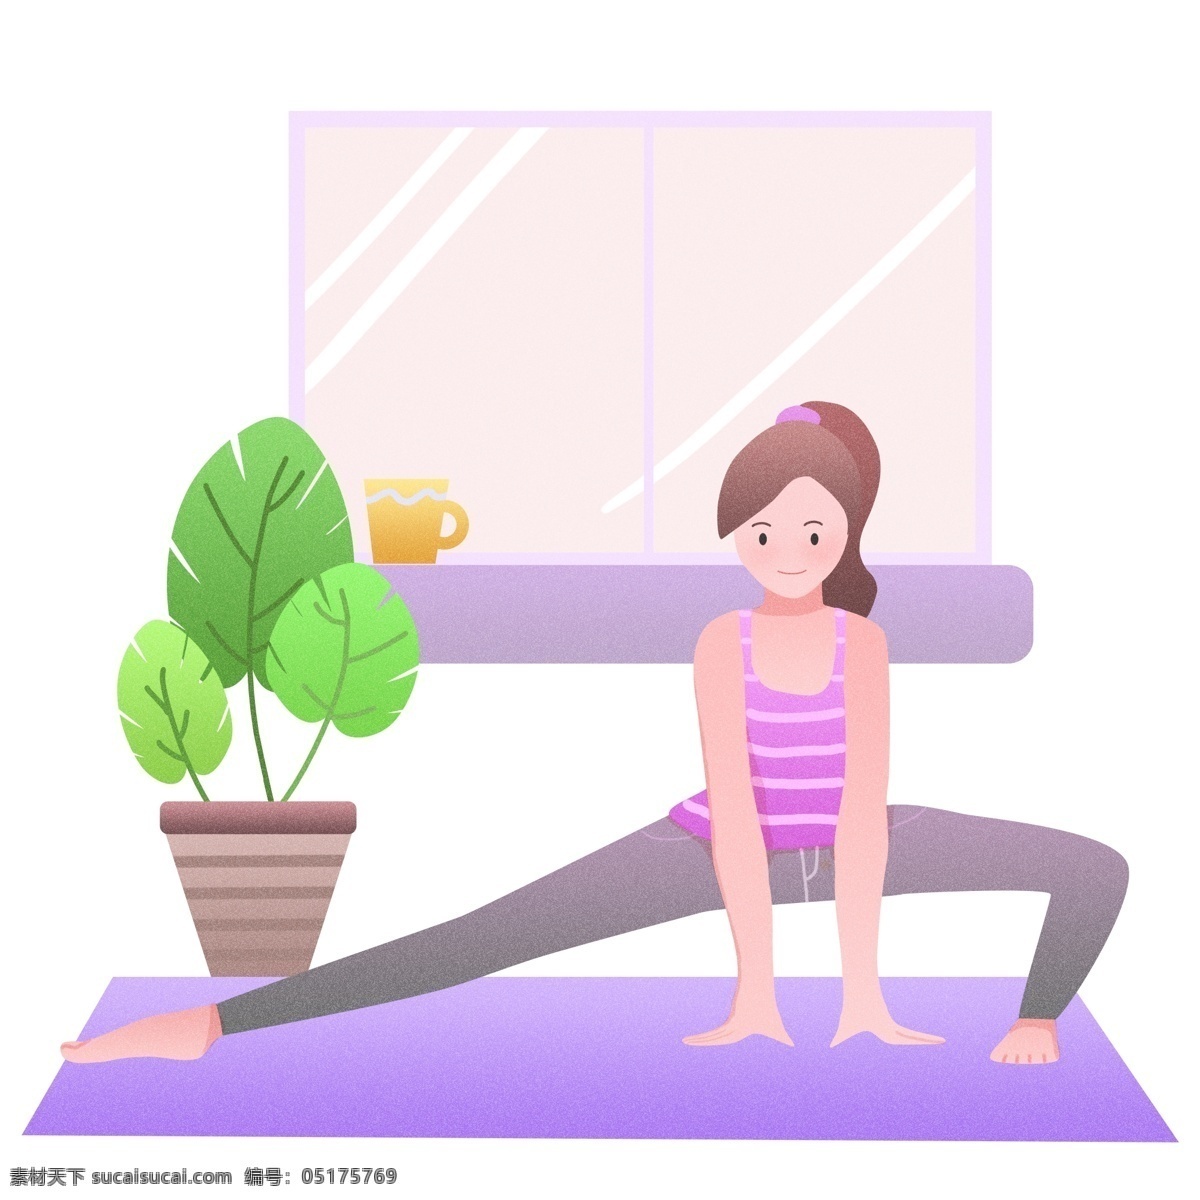 瑜伽 健身 运动 插画 绿色的盆栽 卡通插画 运动插画 健身运动 锻炼身体 活动筋骨 瑜伽的运动